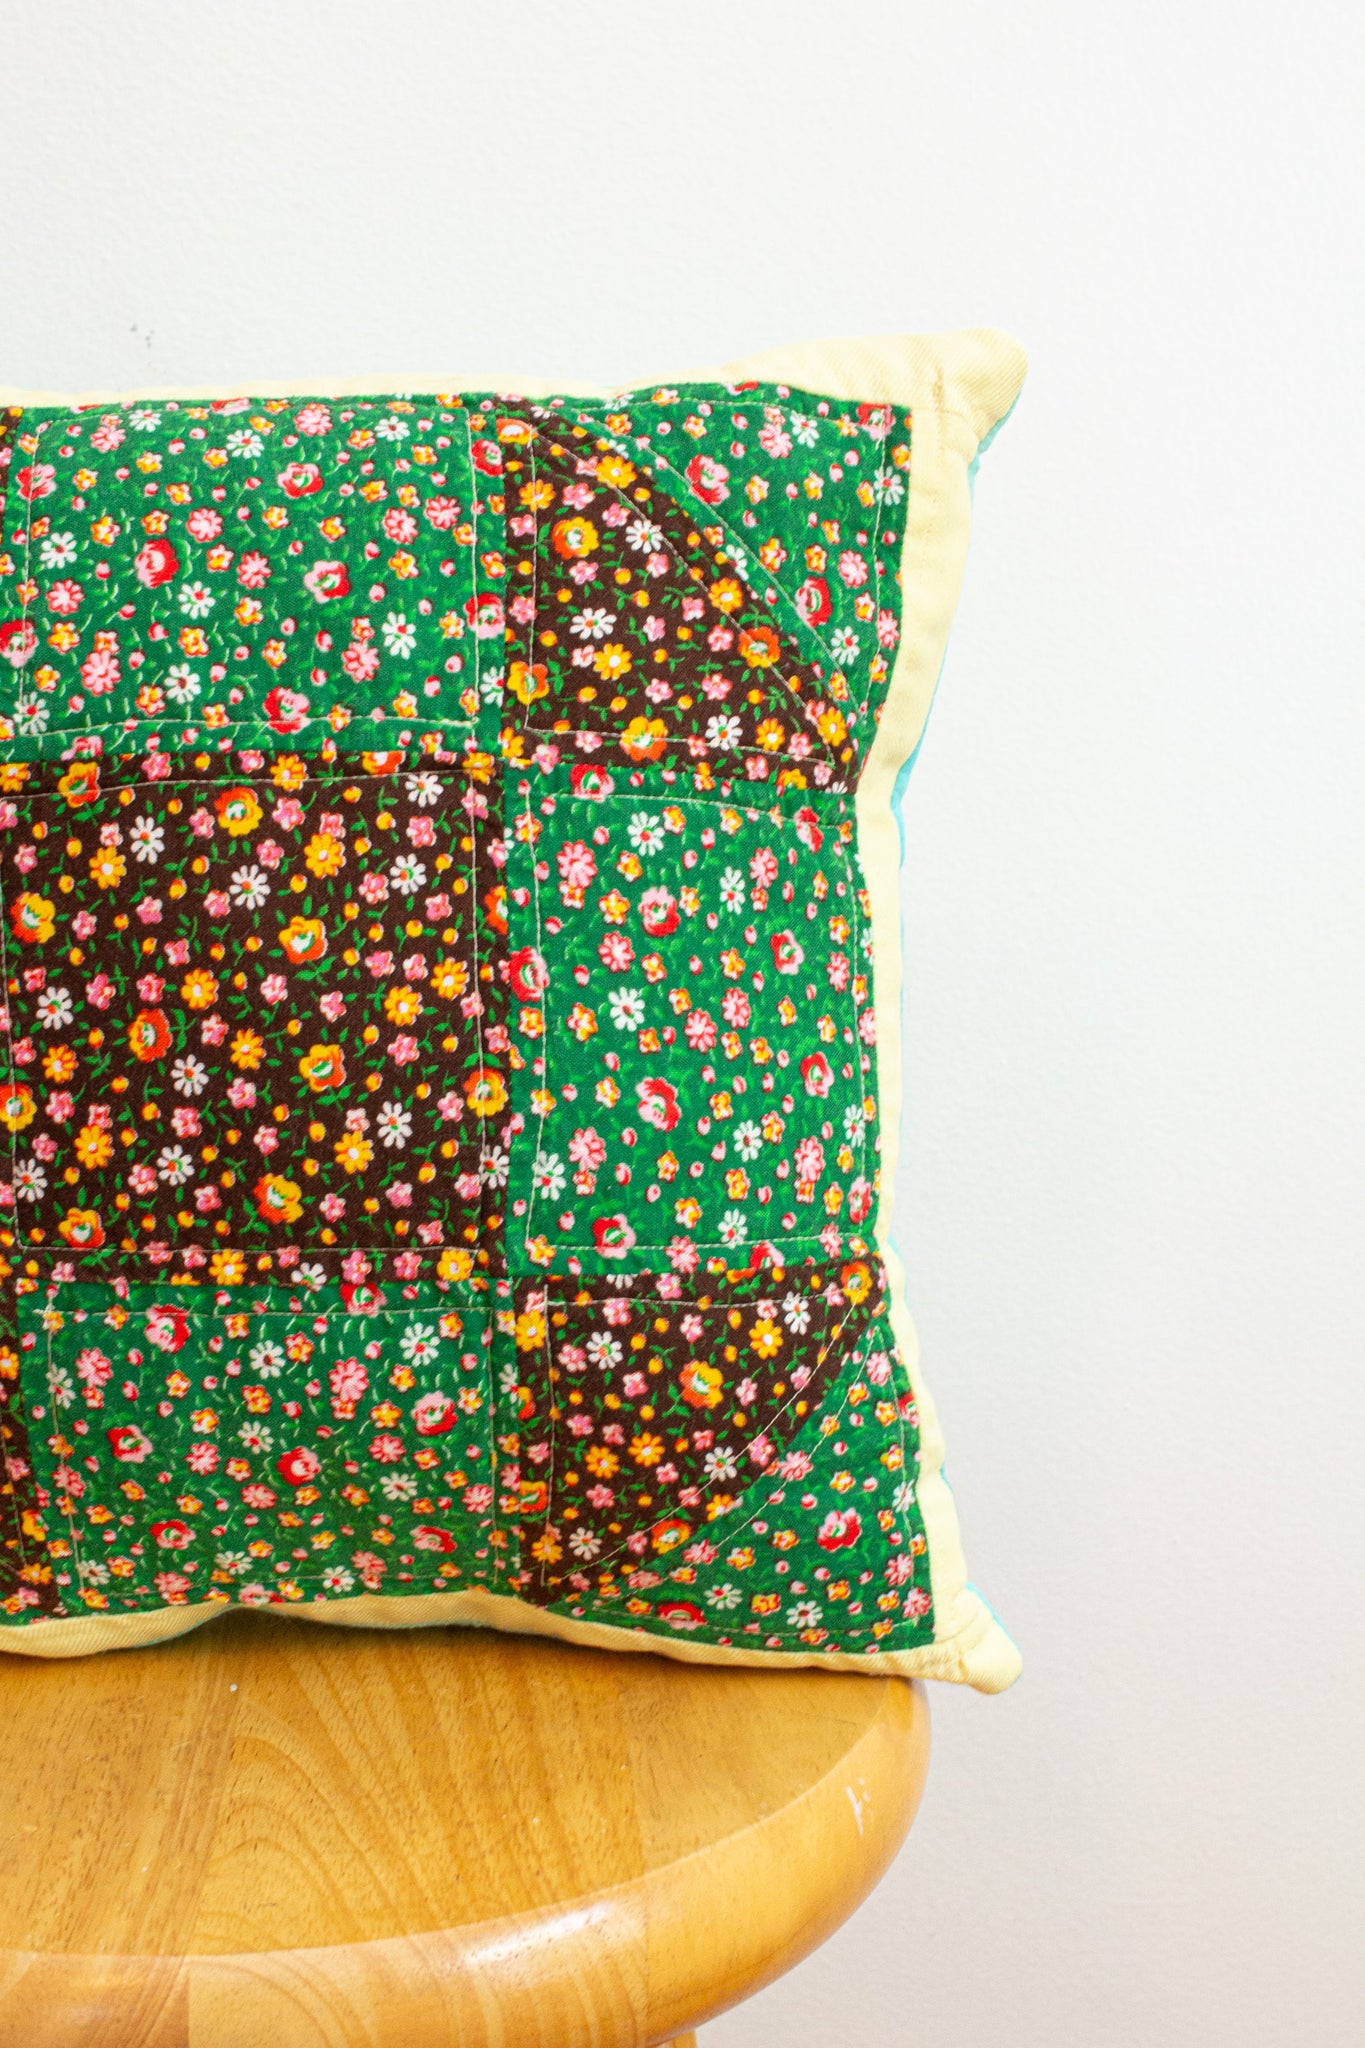 vintage patchwork pillow no. 6